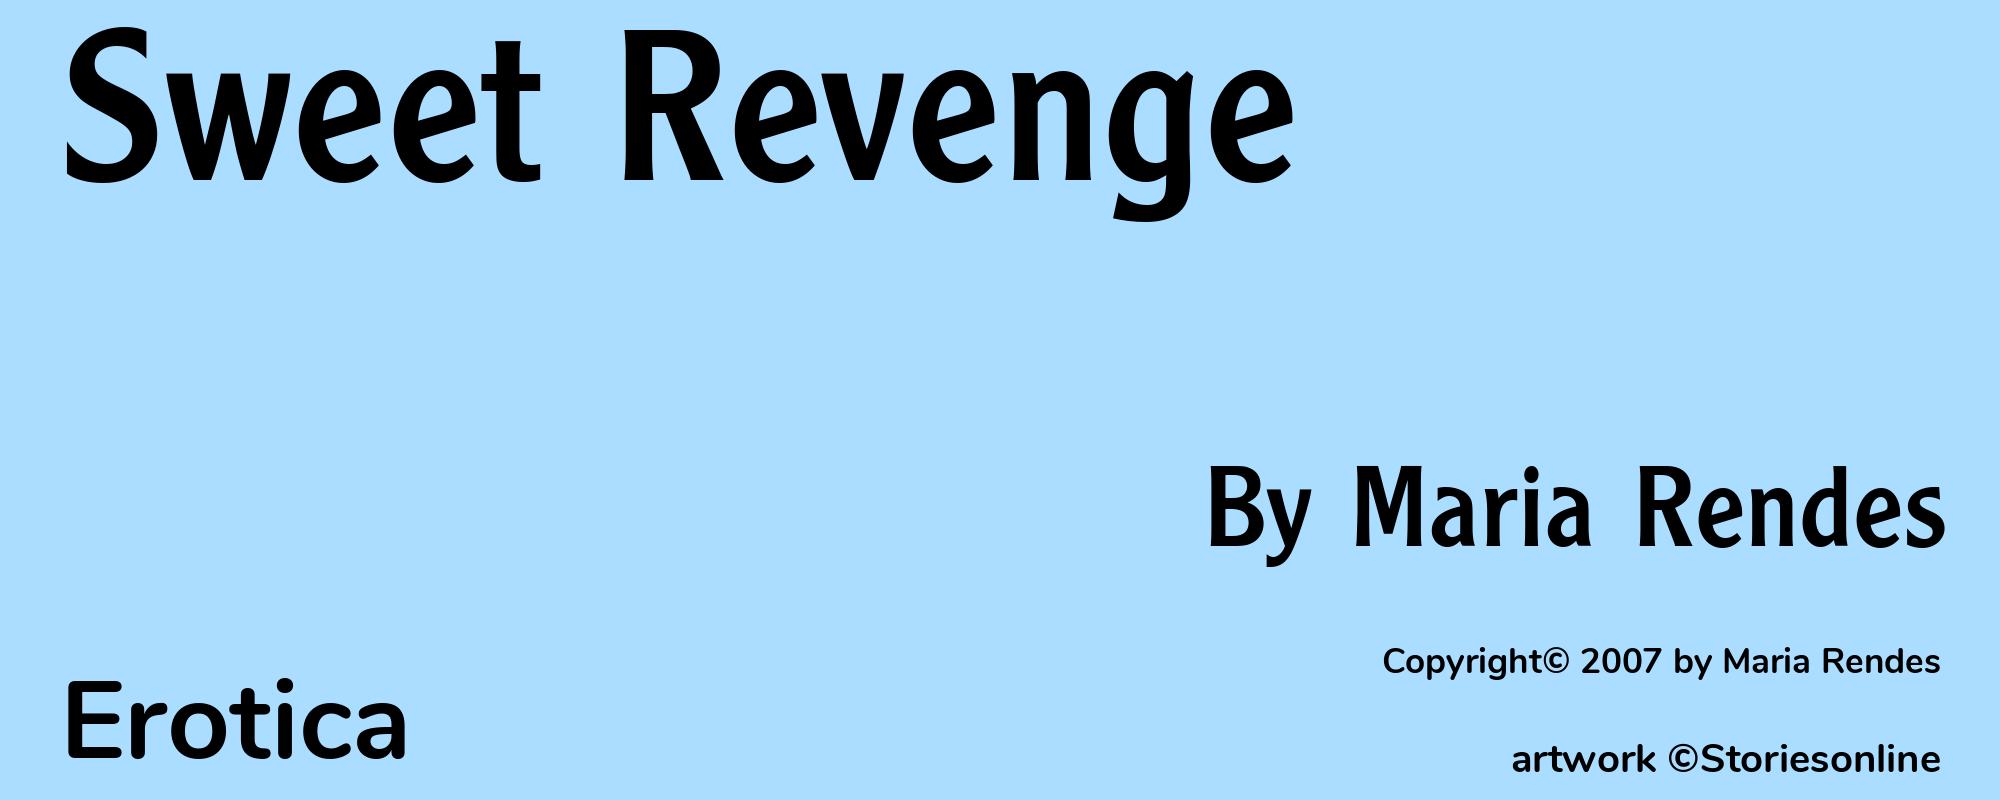 Sweet Revenge - Cover